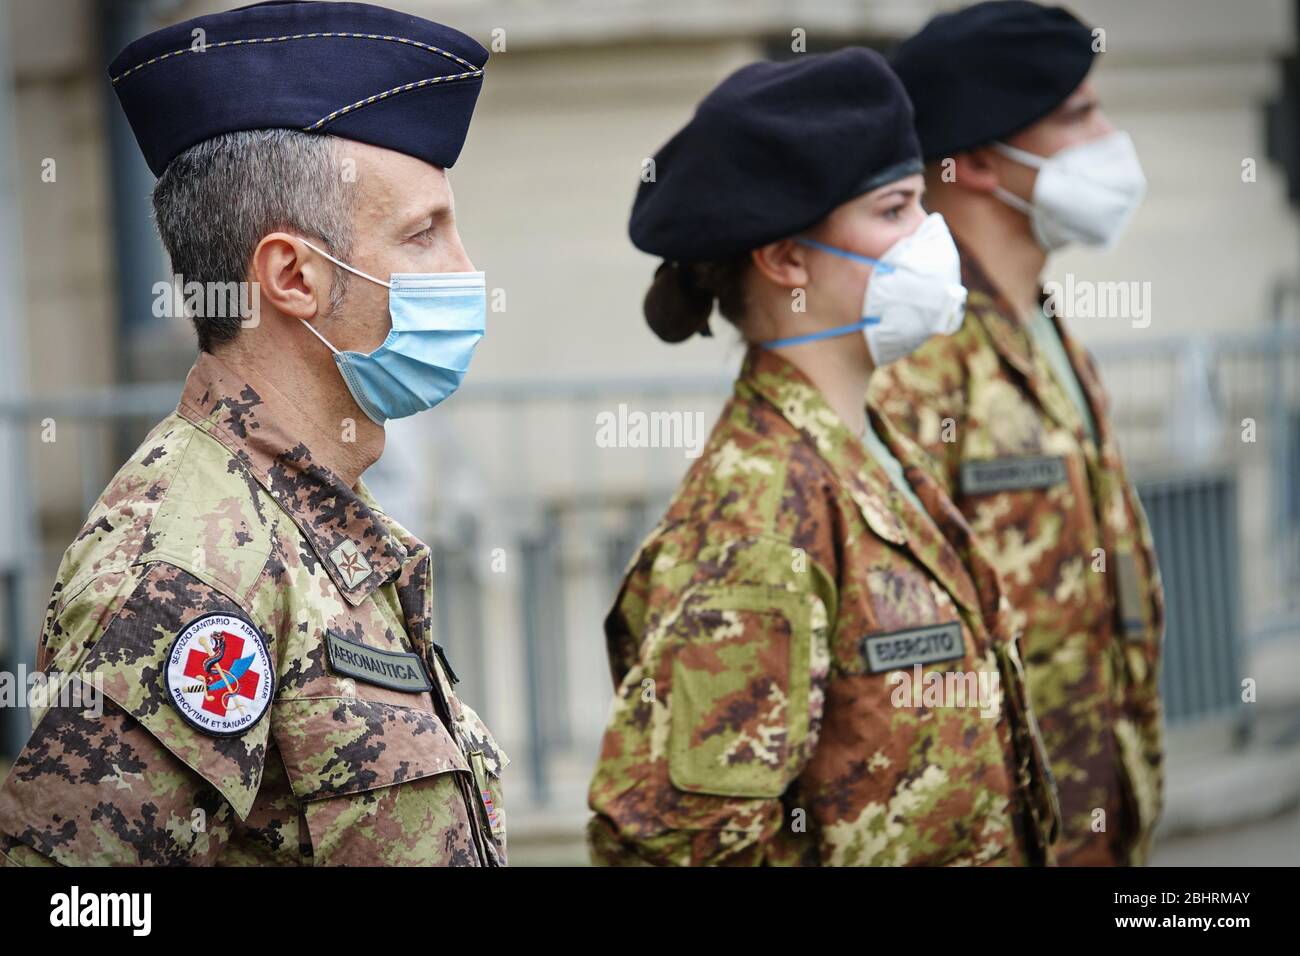 Nuove infermiere militari da impiegare nelle case di cura per aiutare il sistema sanitario regionale a far fronte all’emergenza del coronavirus. Torino, Italia - Aprile 2020 Foto Stock